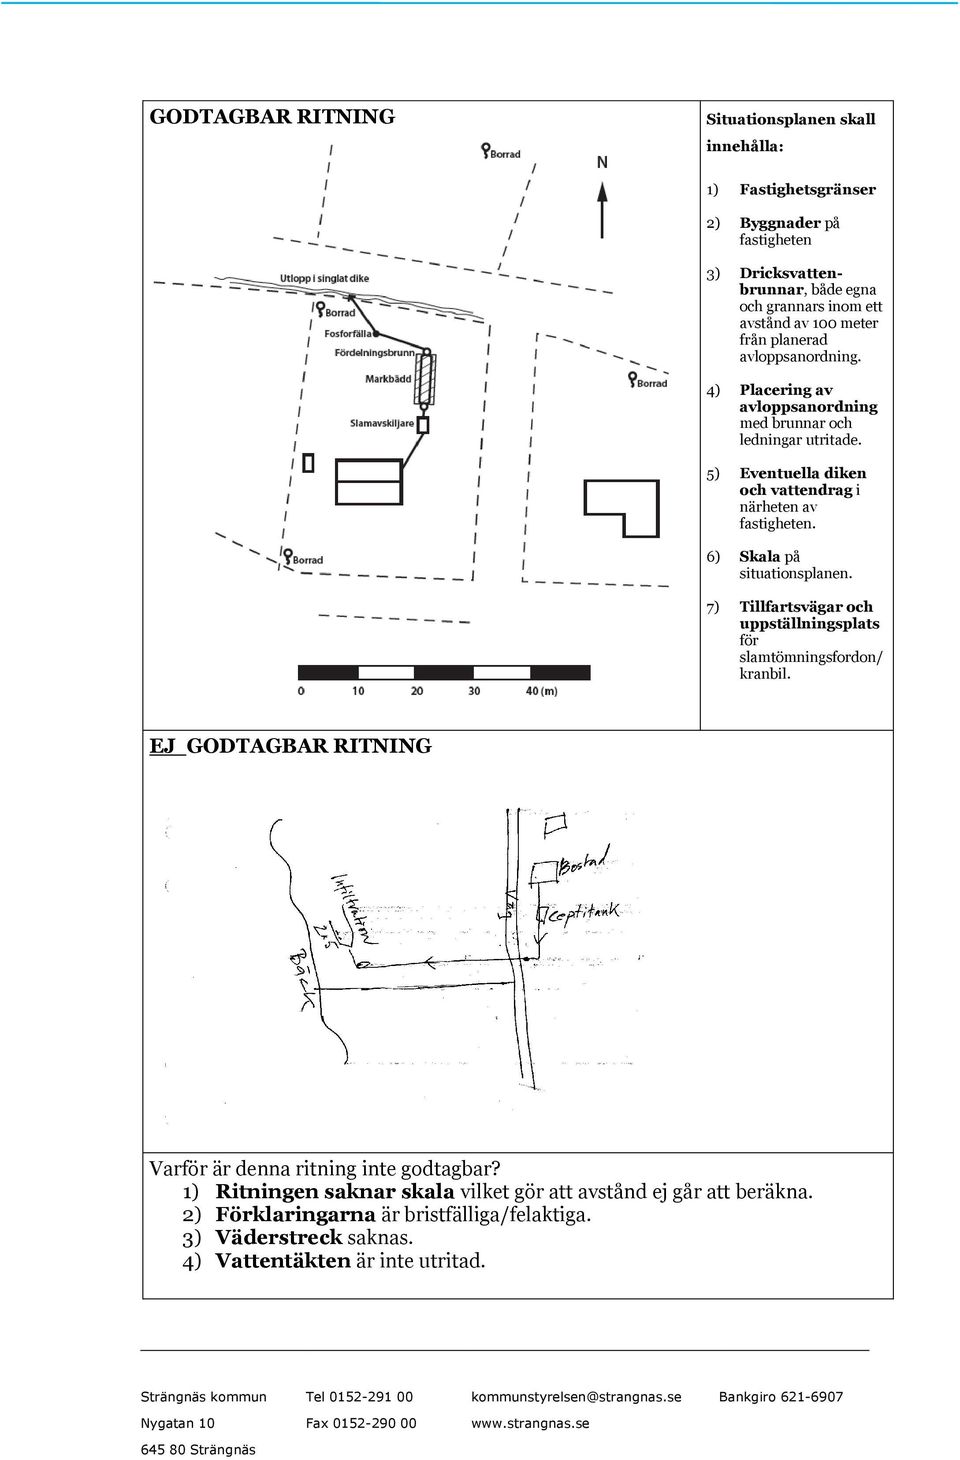 5) Eventuella diken och vattendrag i närheten av fastigheten. 6) Skala på situationsplanen. 7) Tillfartsvägar och uppställningsplats för slamtömningsfordon/ kranbil.